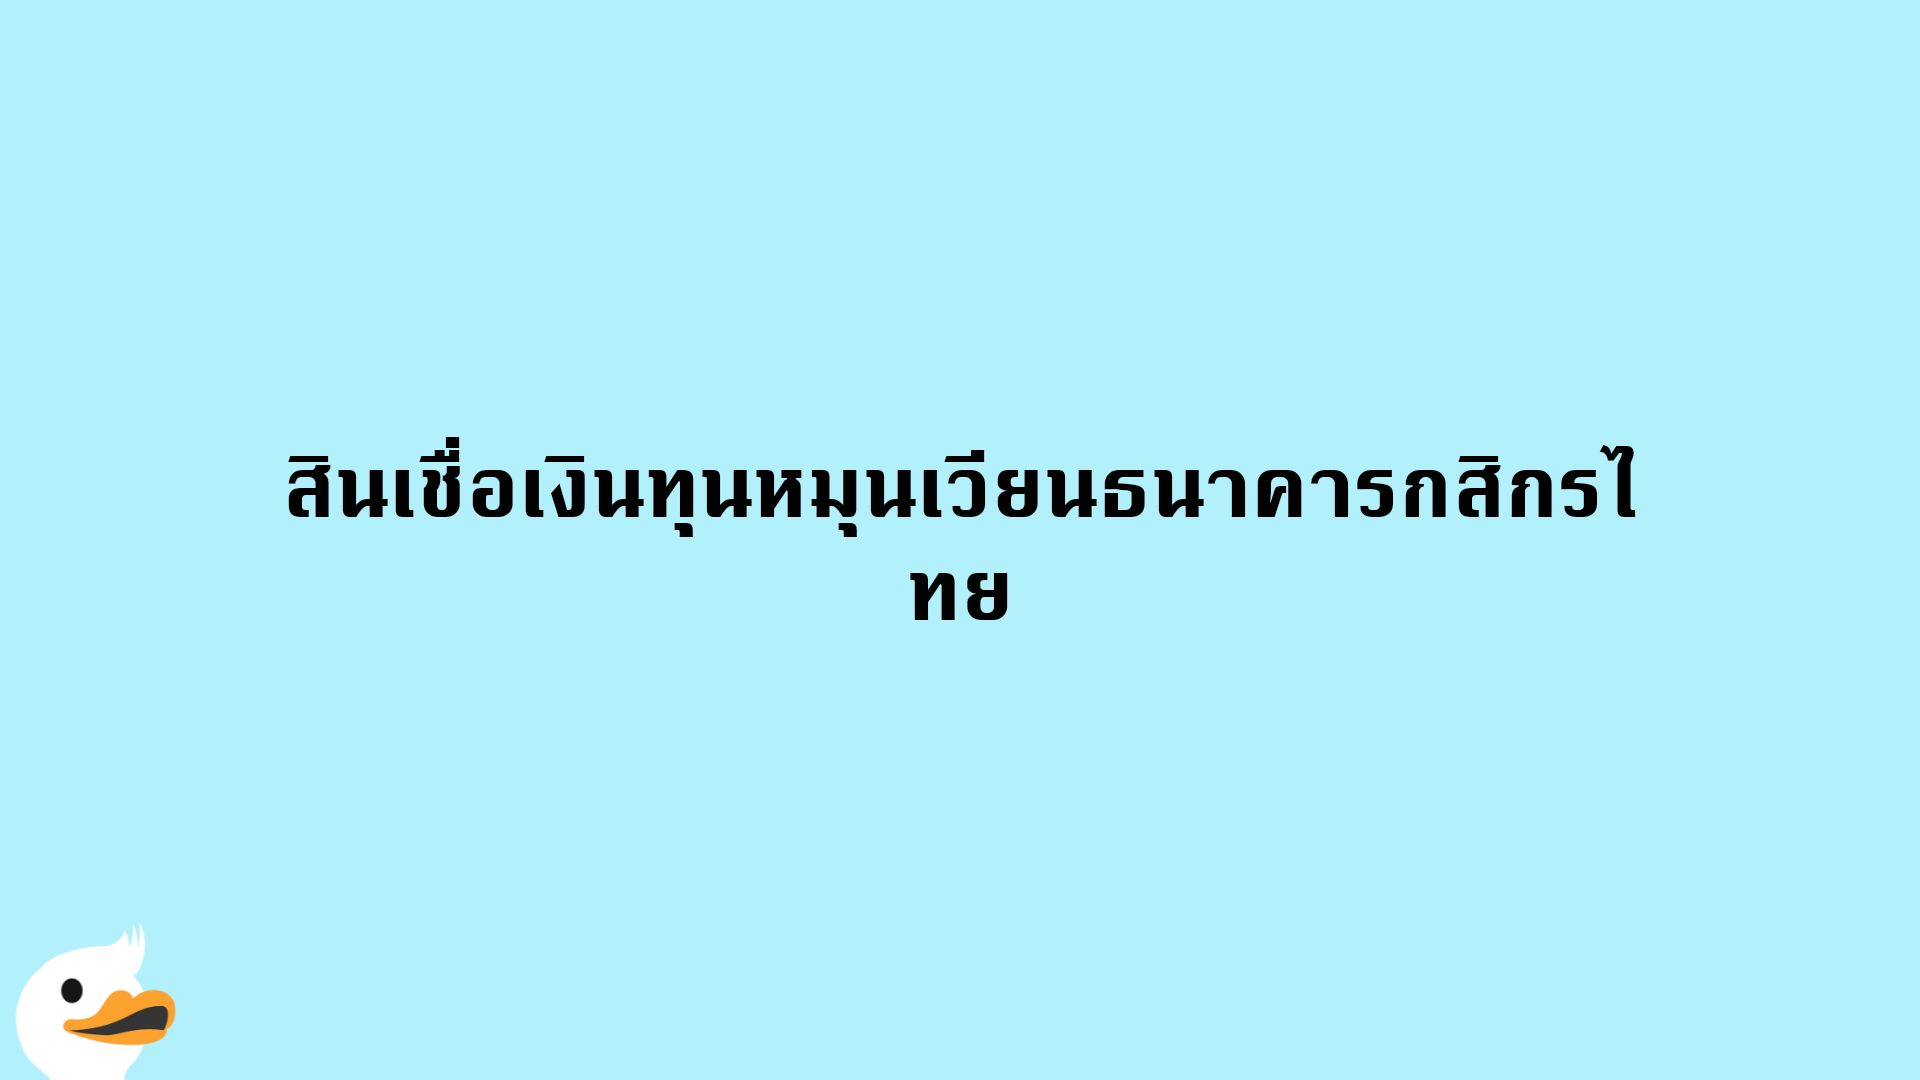 สินเชื่อเงินทุนหมุนเวียนธนาคารกสิกรไทย